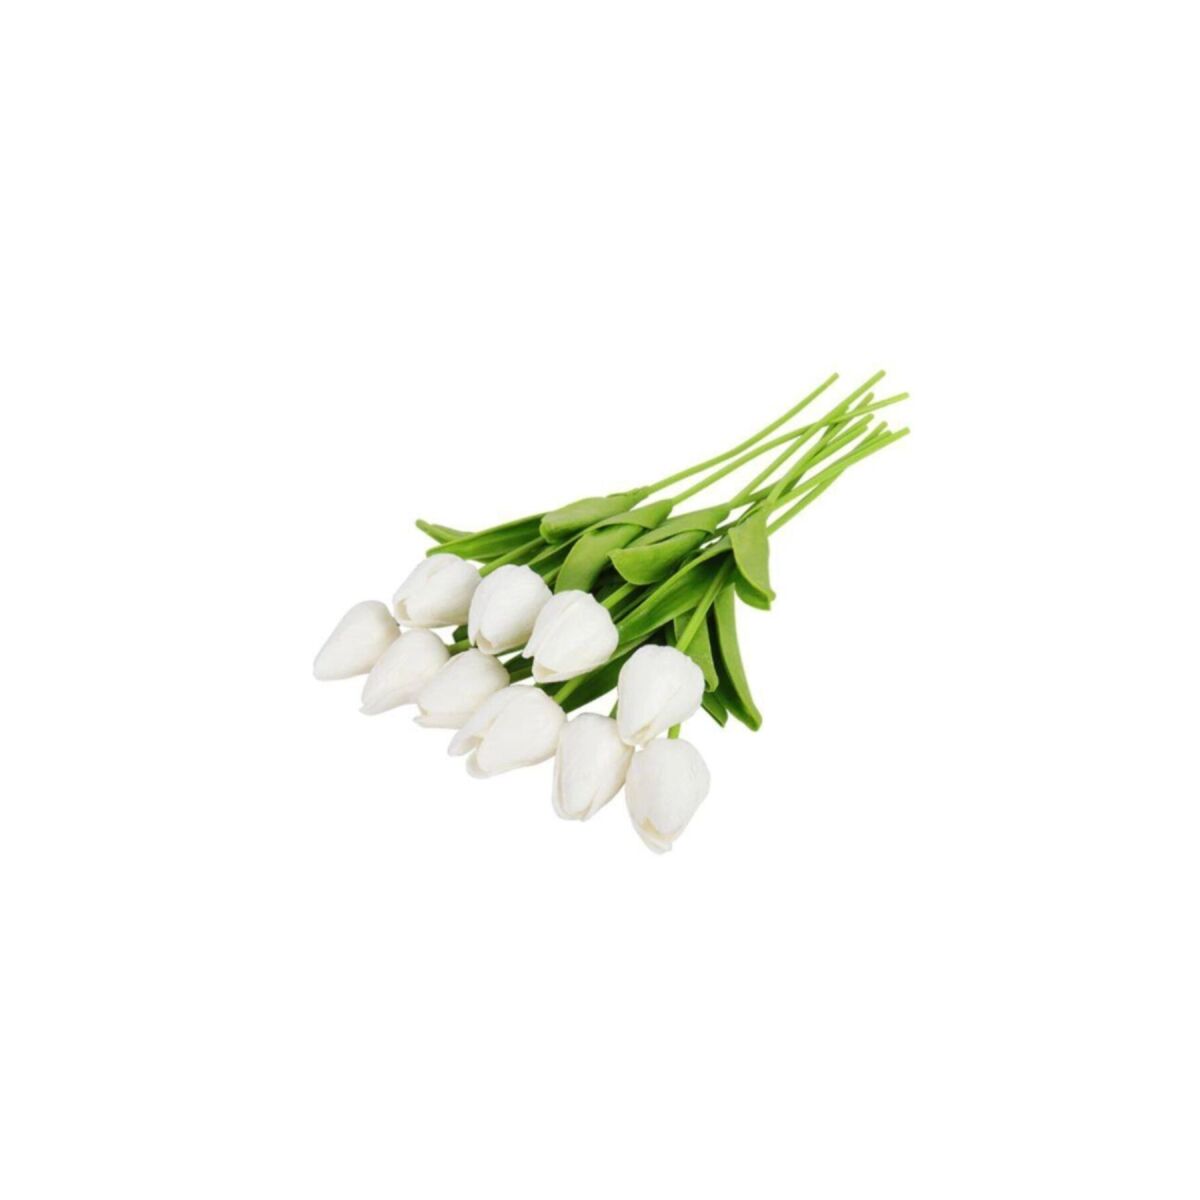 Yapay Çiçek Islak Lale Gerçeksi Doku 10Lu Beyaz